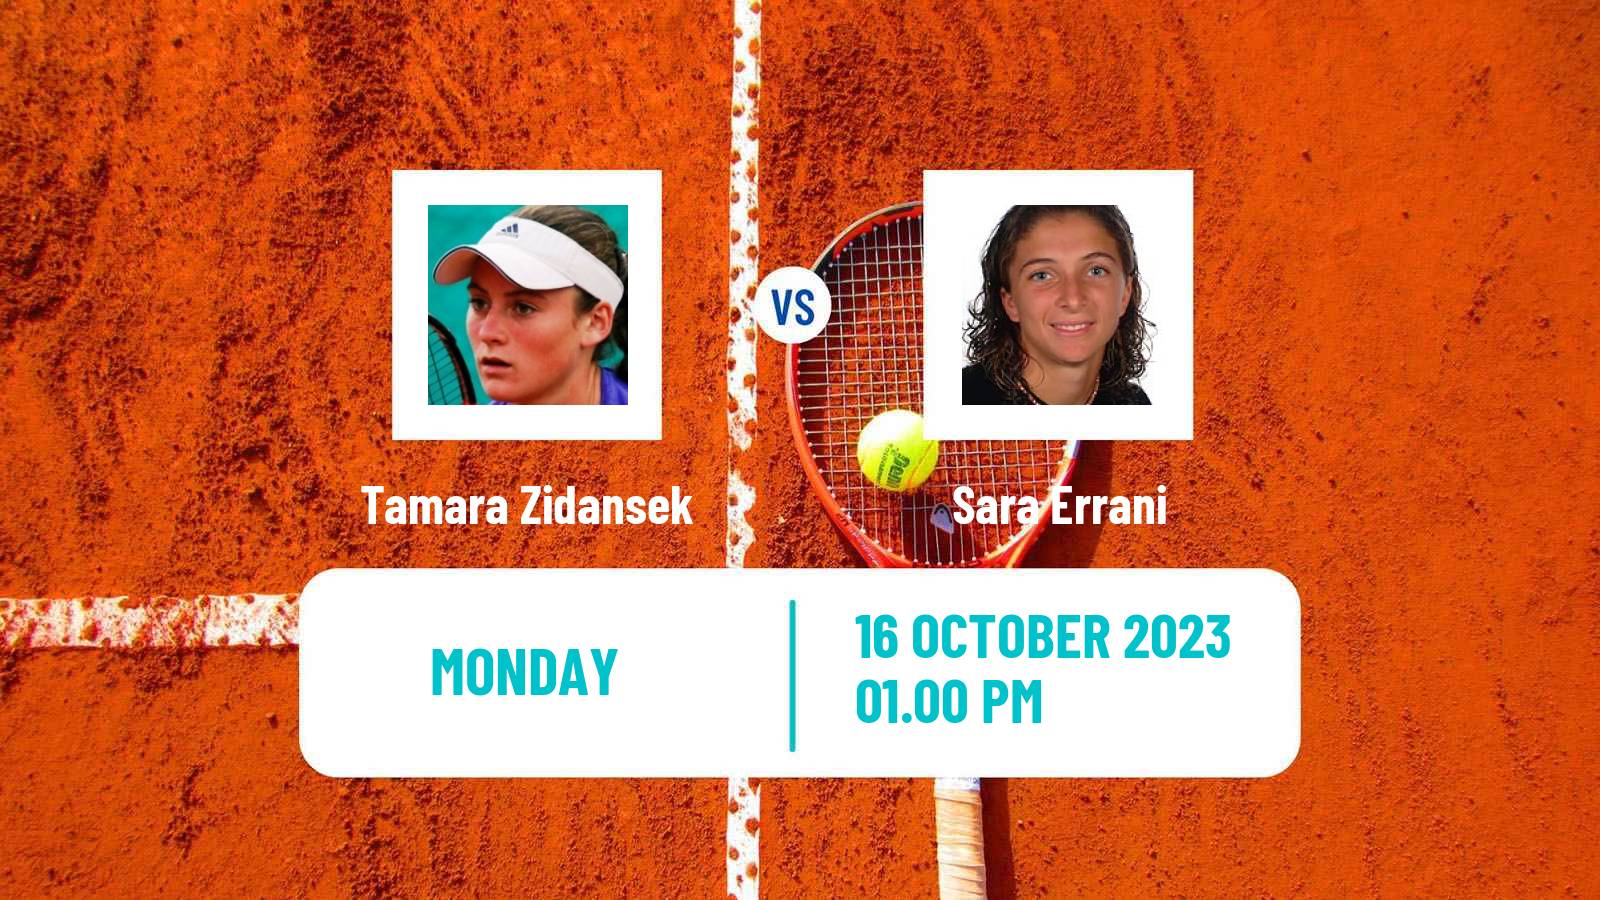 Tennis WTA Monastir Tamara Zidansek - Sara Errani